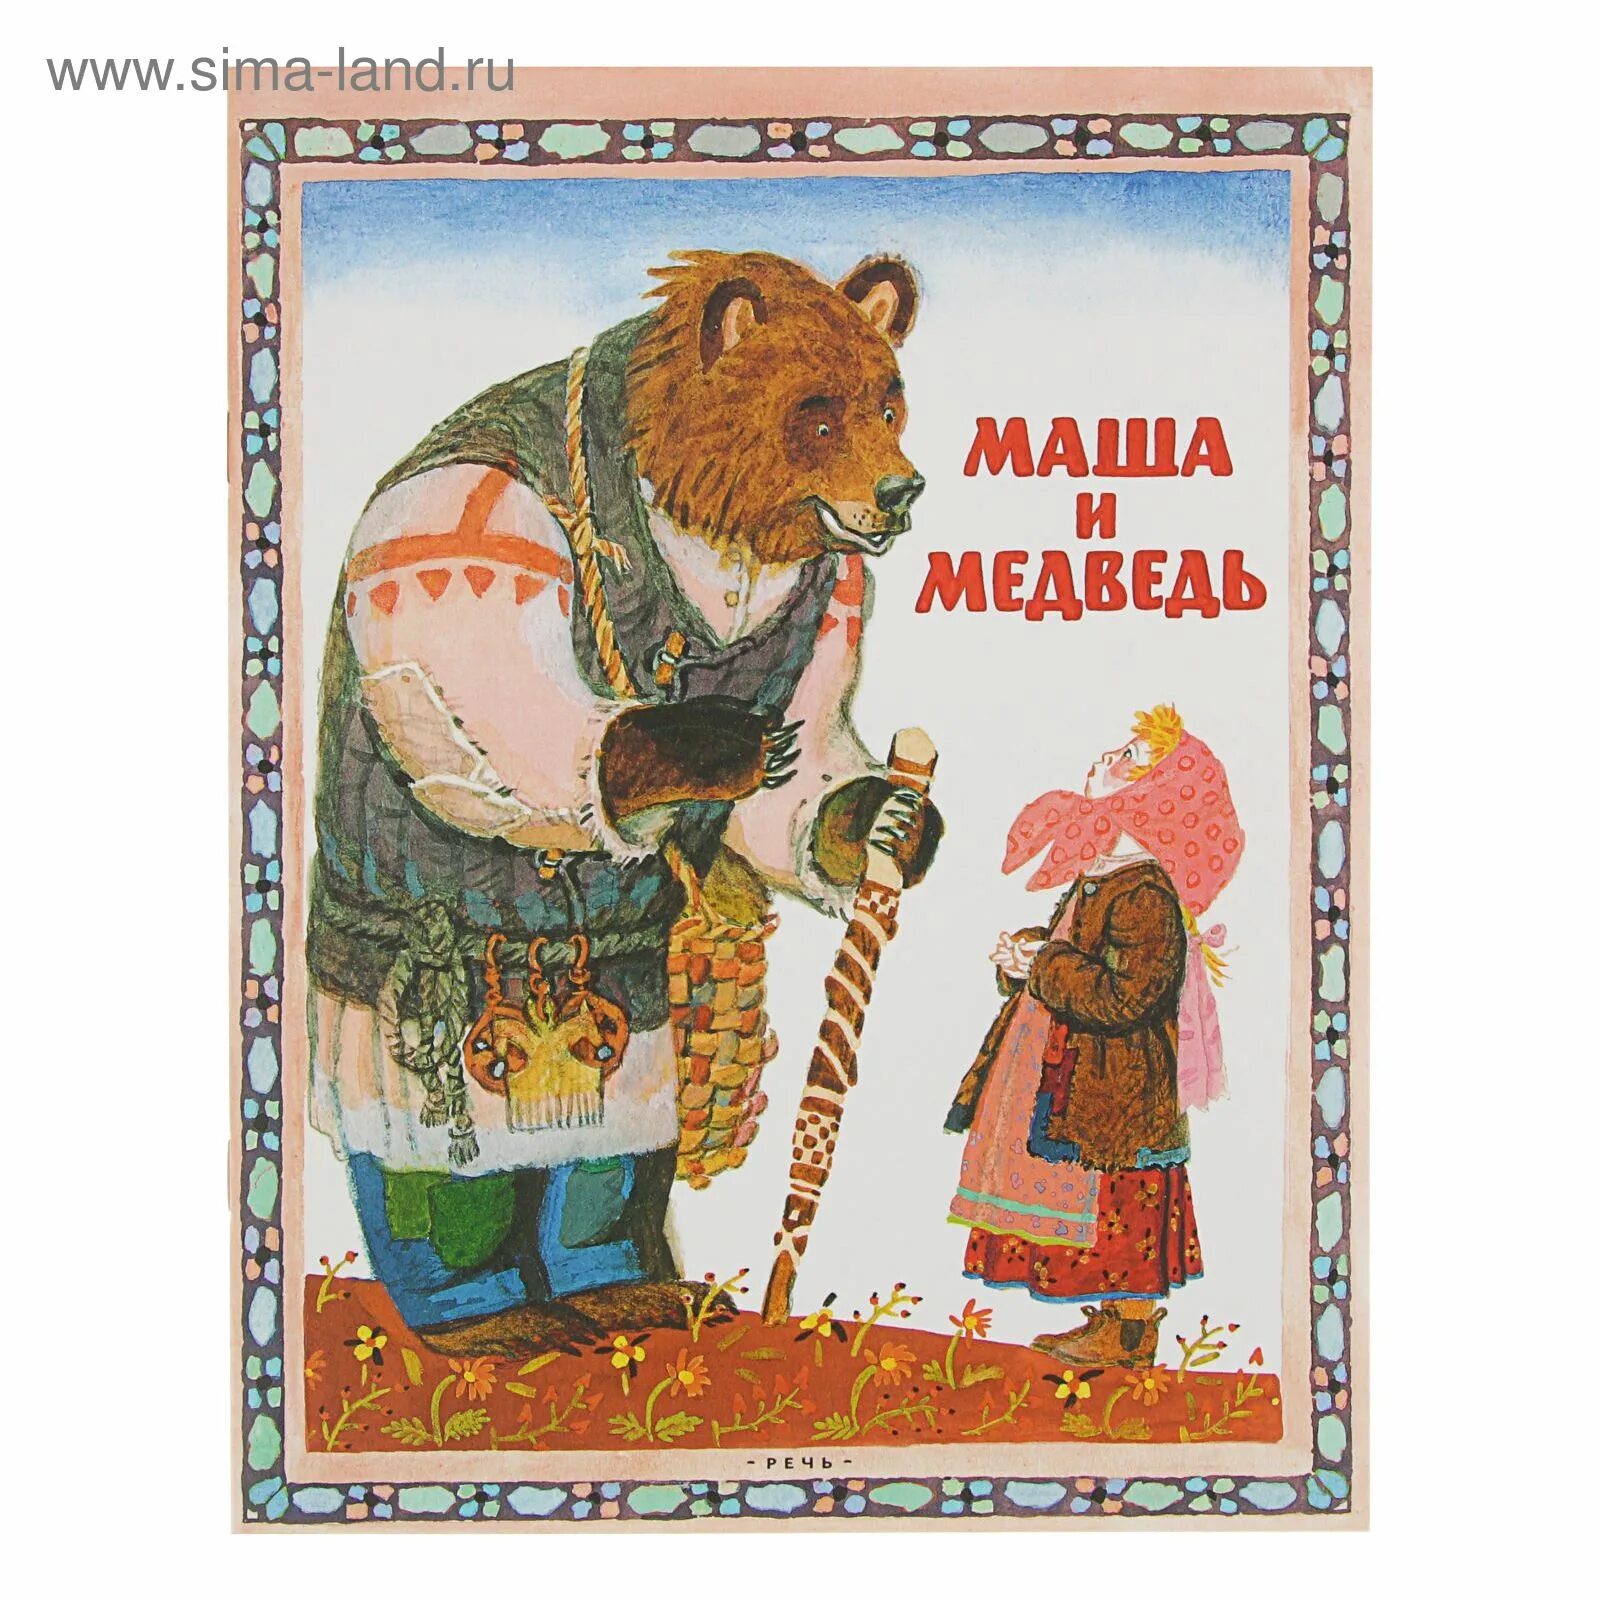 Сказка Маша и медведь. Медведь в русских сказках. Русские народные сказки Маша и медведь. Иллюстрации к сказке Маша и медведь.